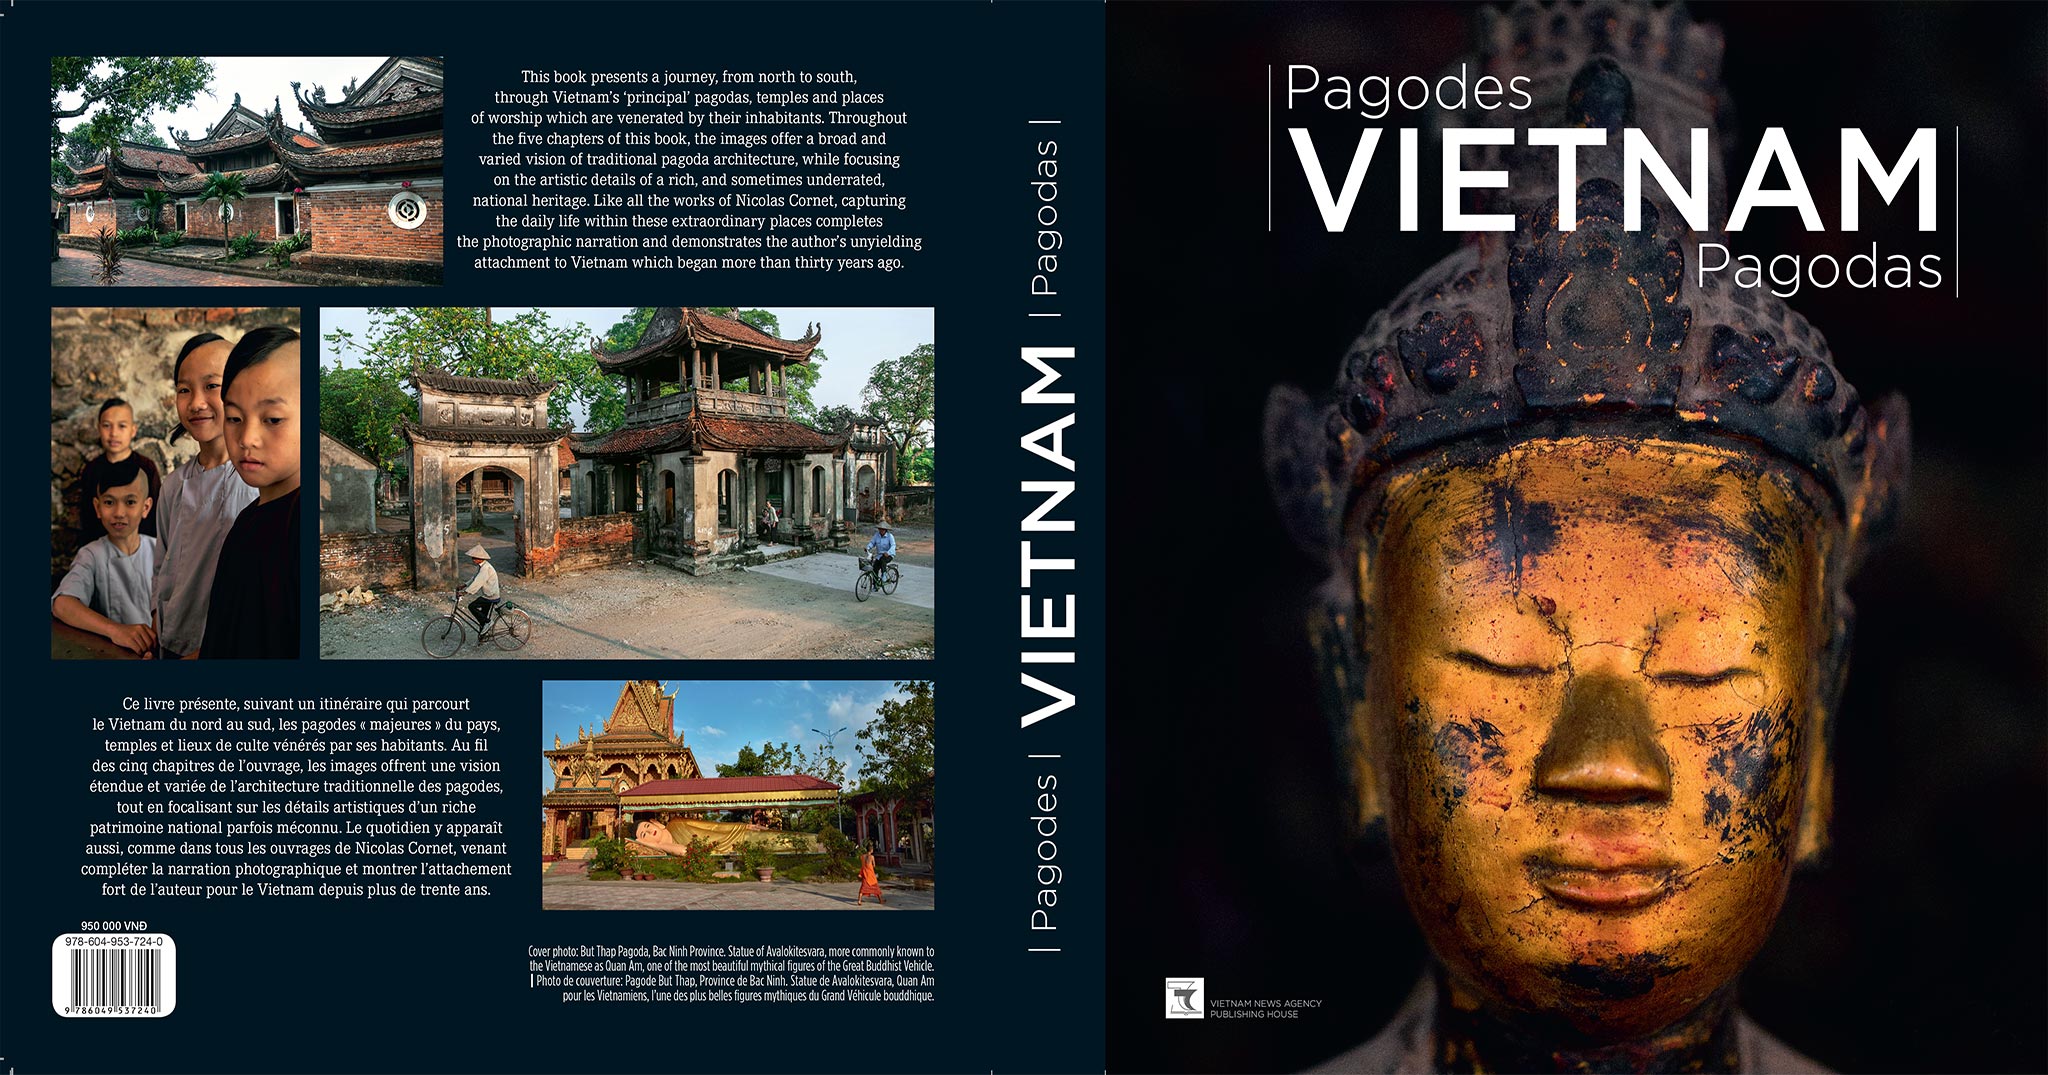 Triển lãm ảnh "Chùa Việt Nam" của Nicolas Cornet tại Hà Nội  9/11 - 31/12